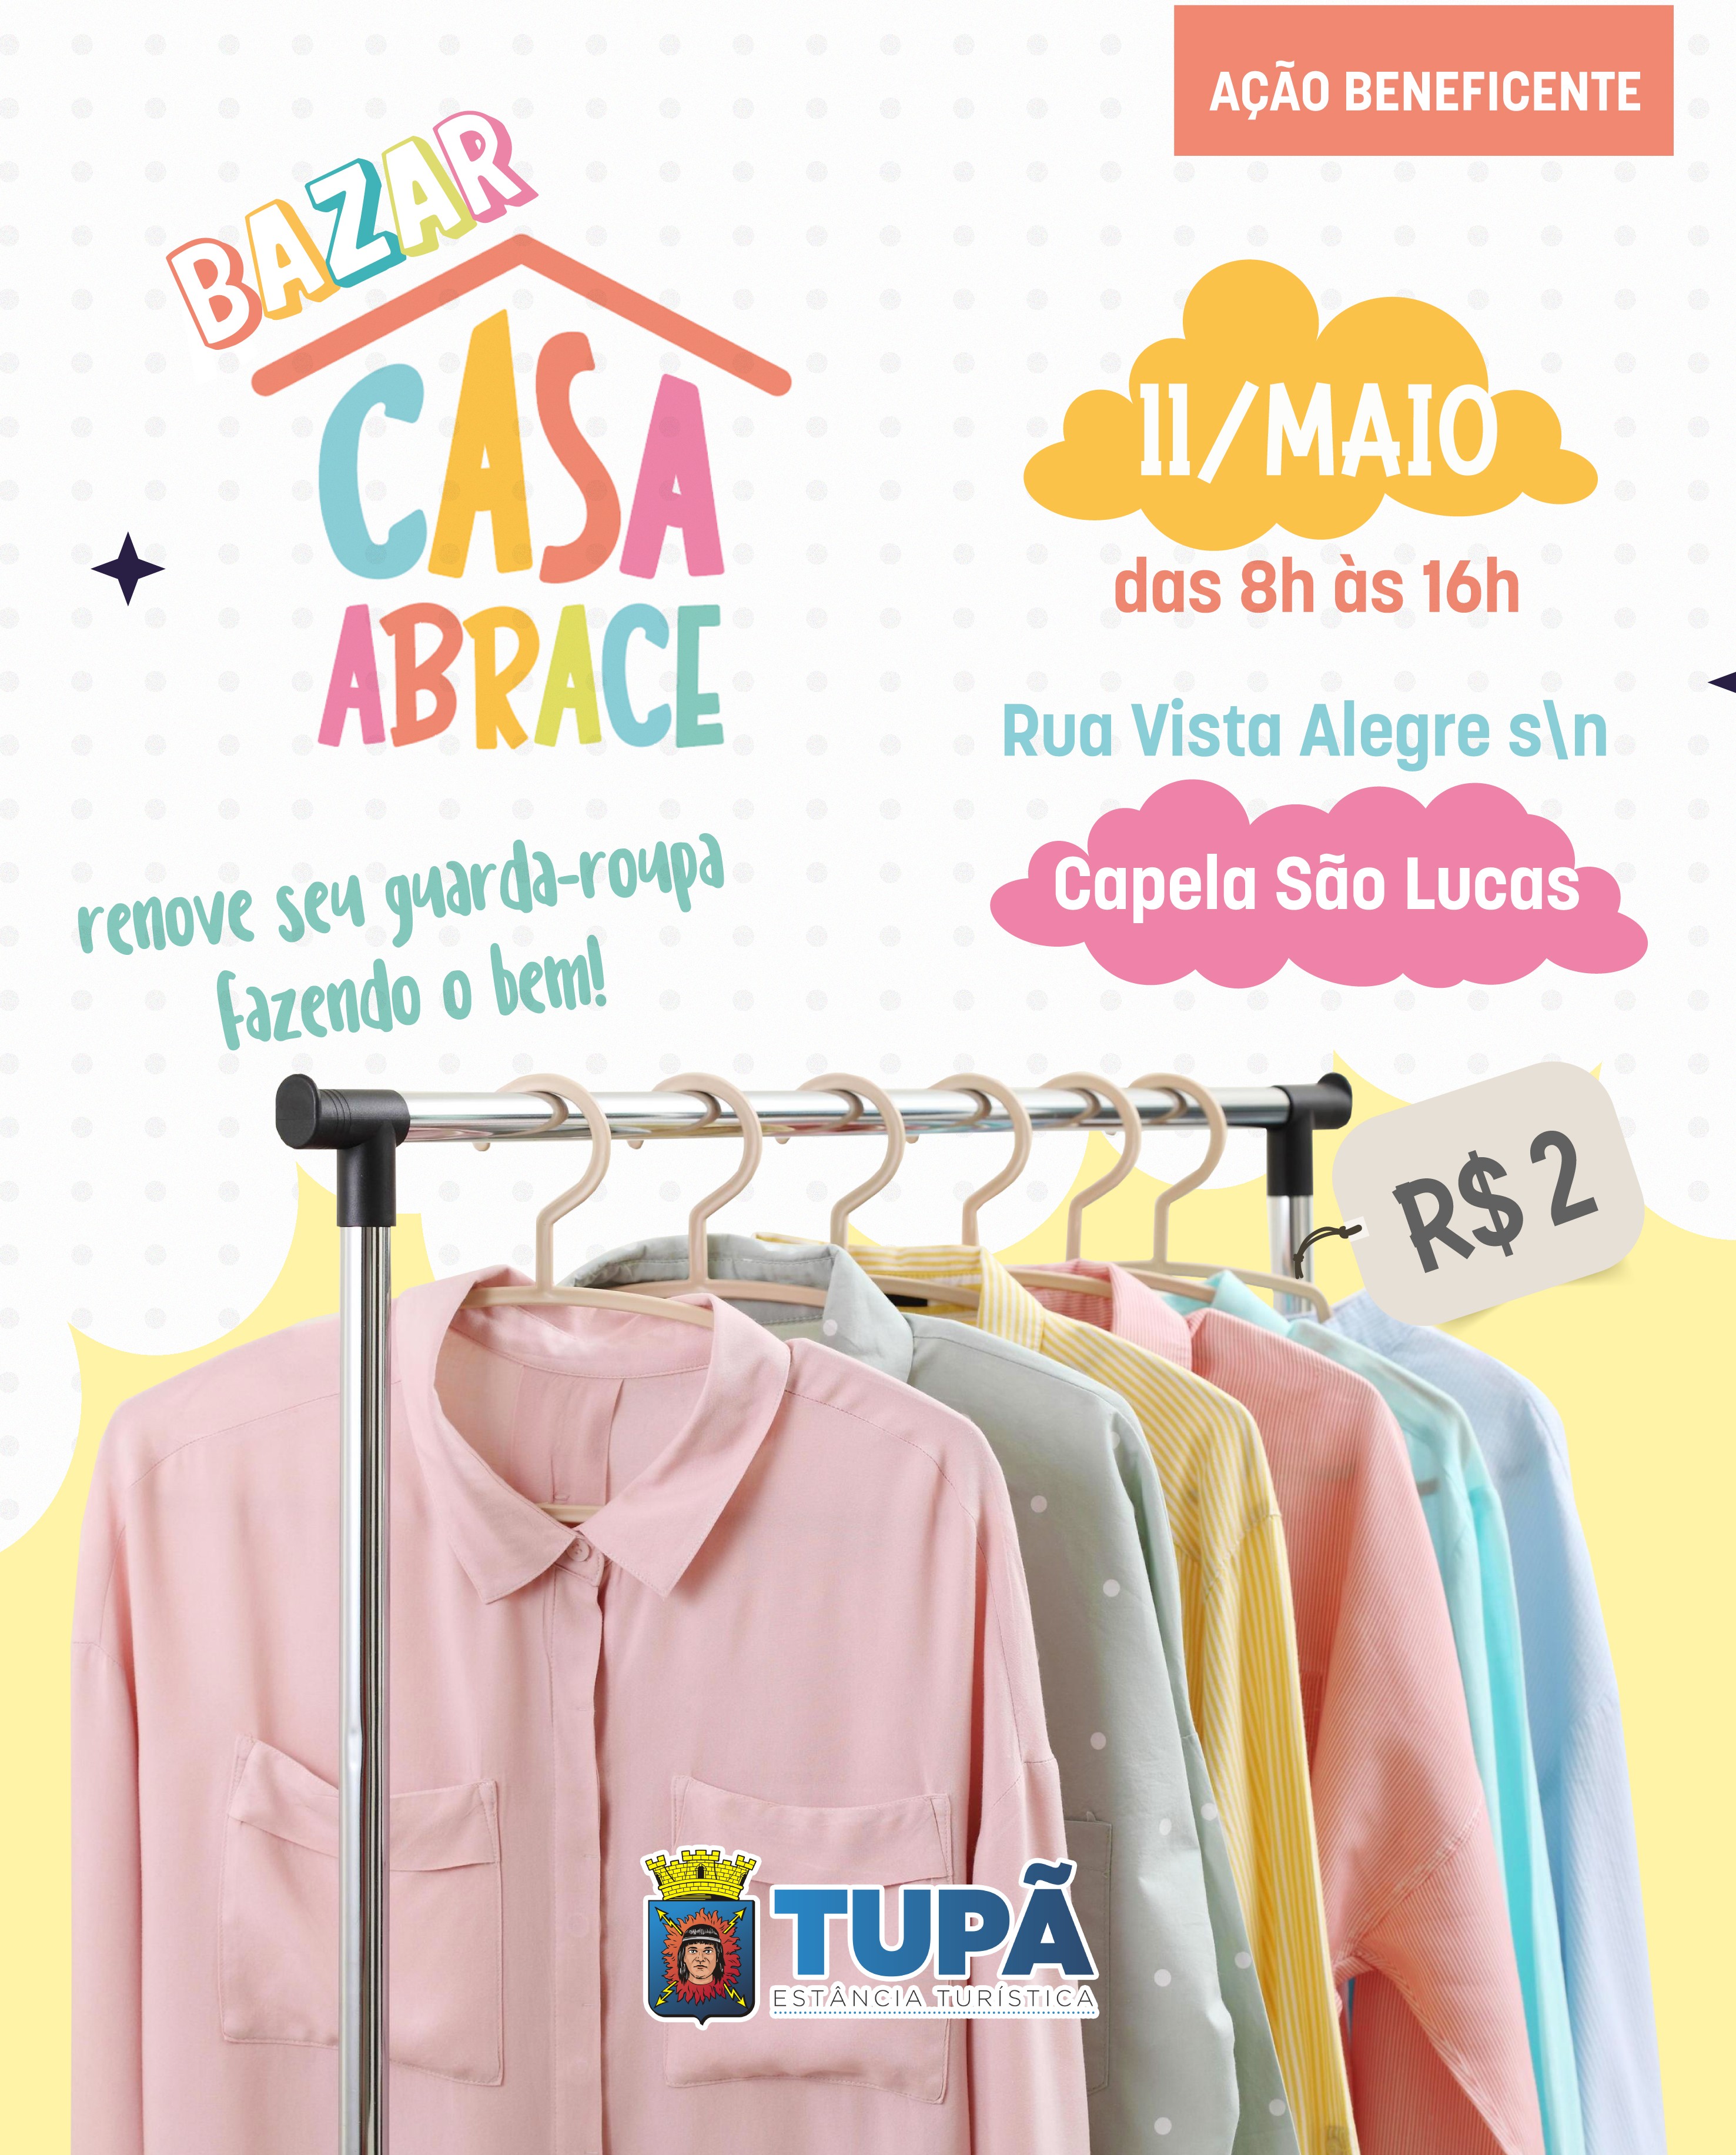 Casa Abrace realizará Bazar Solidário com roupas a R$ 2